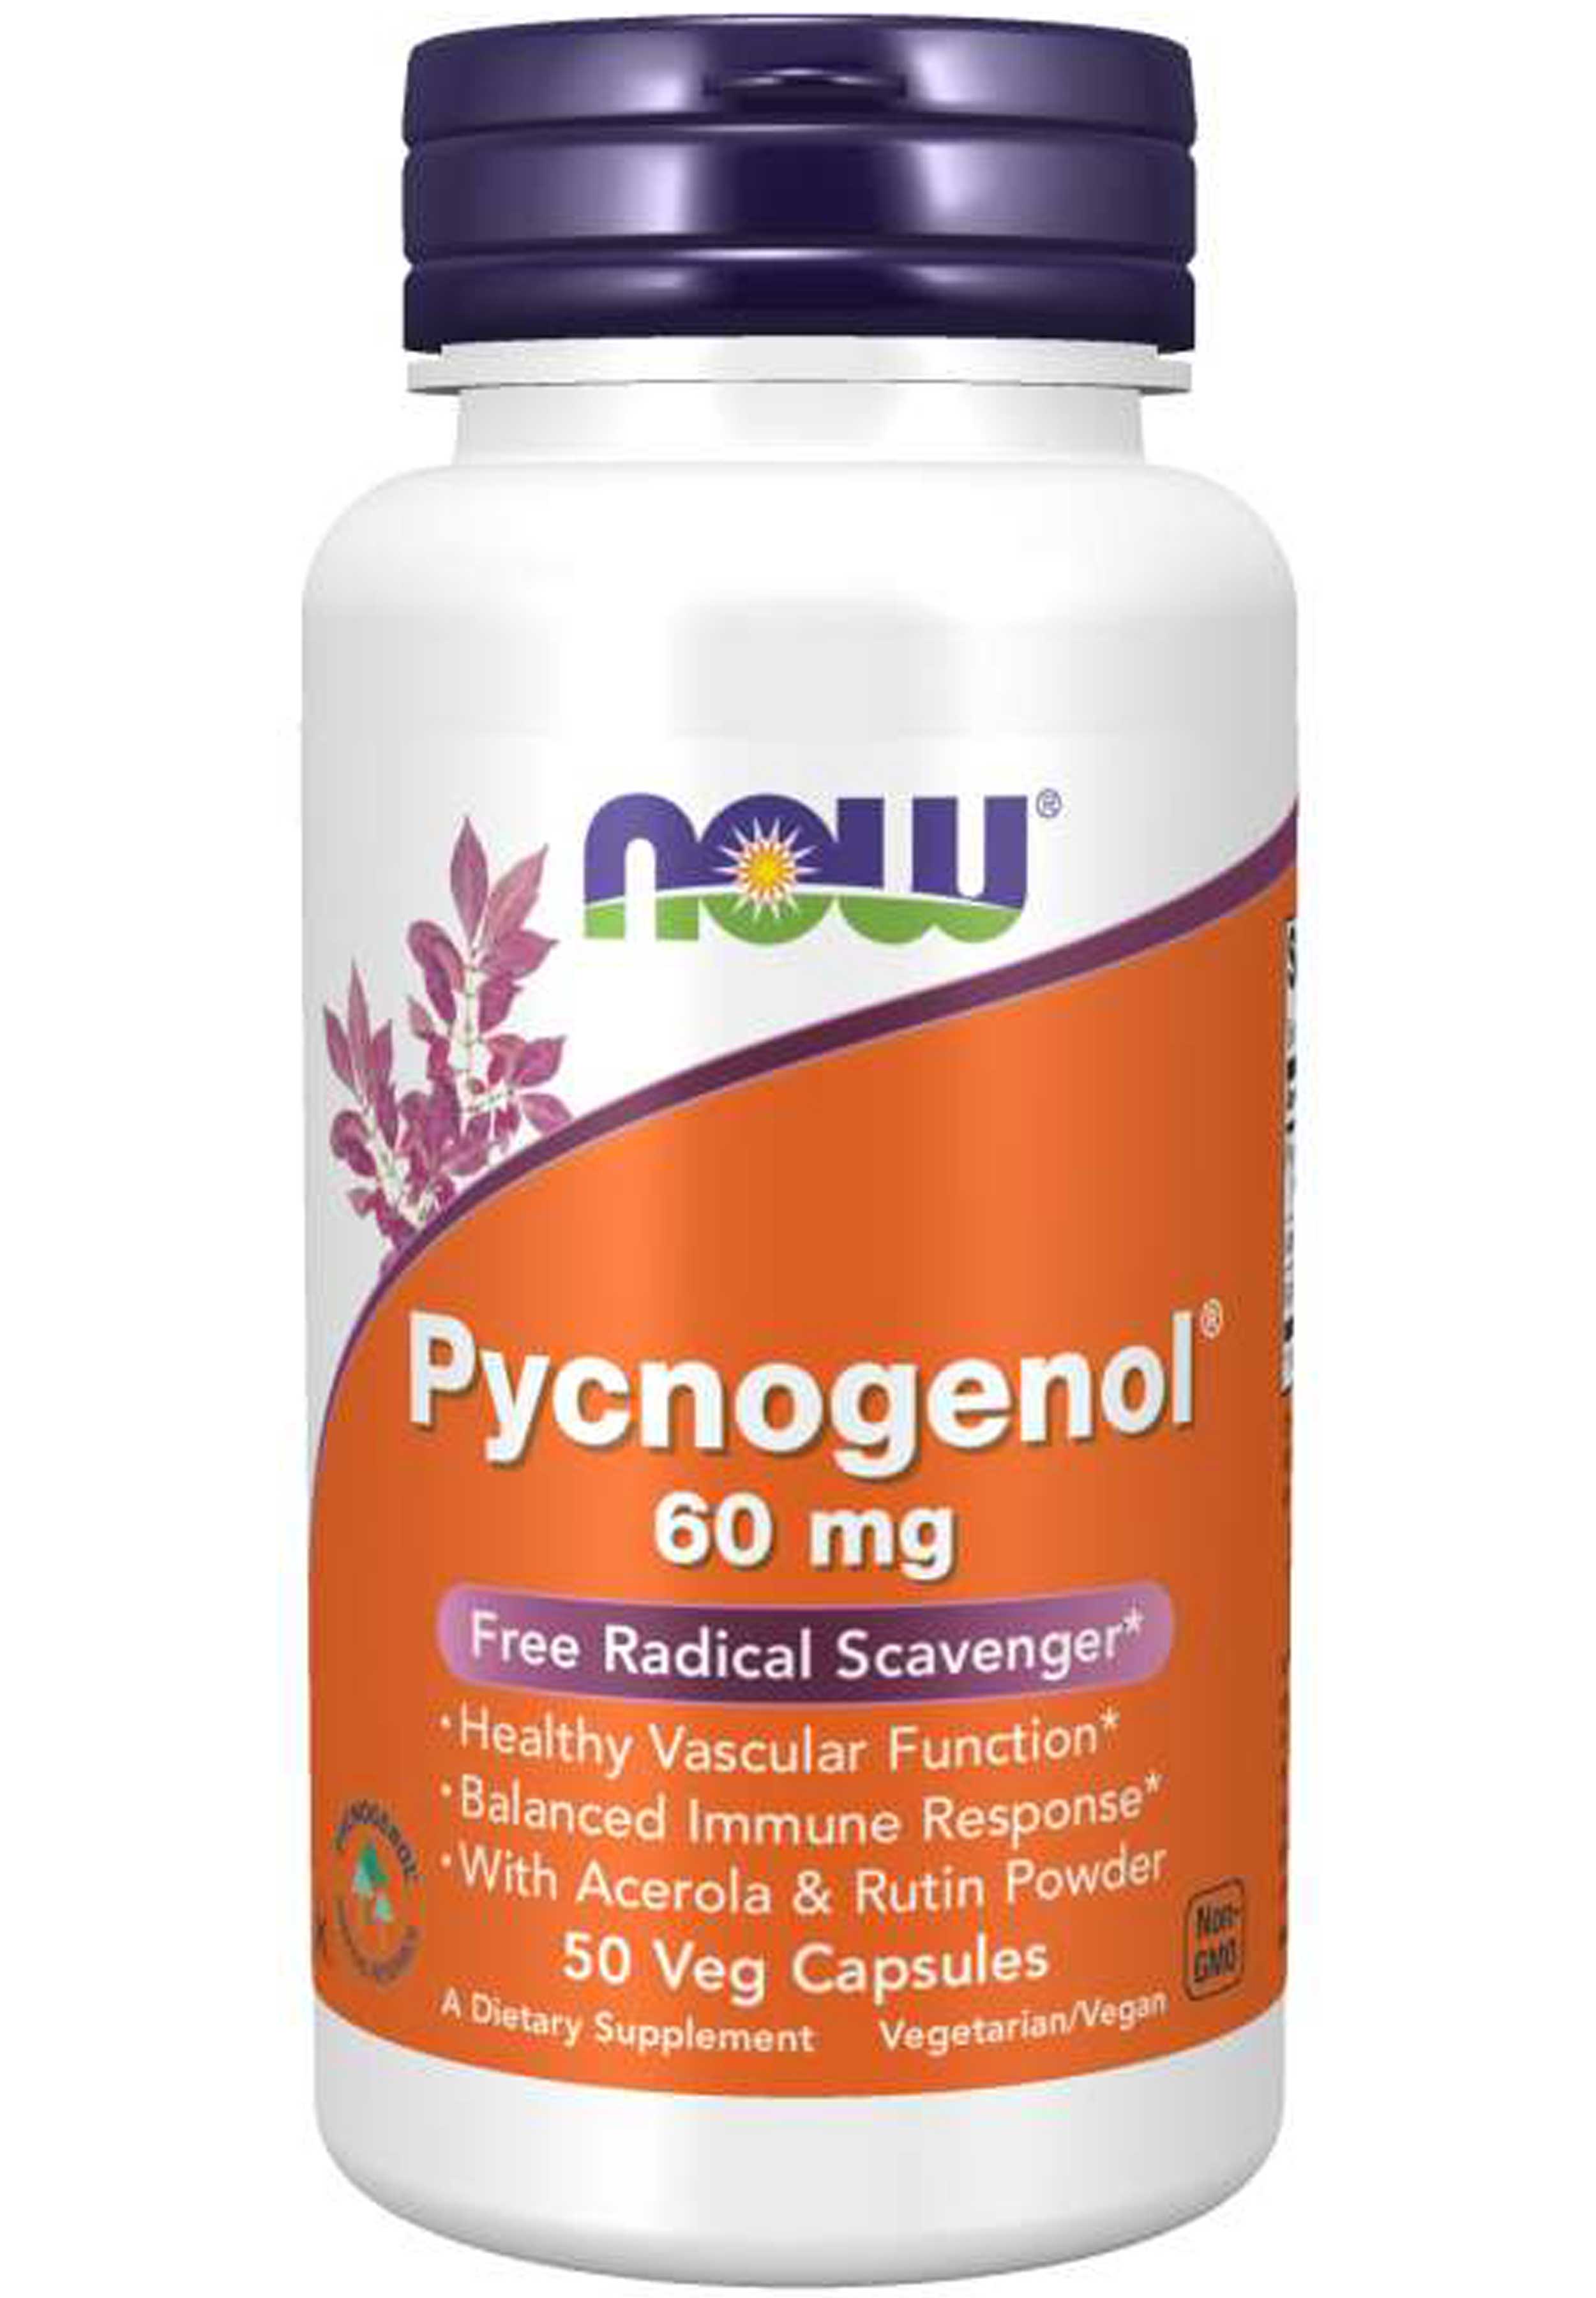 NOW Pycnogenol